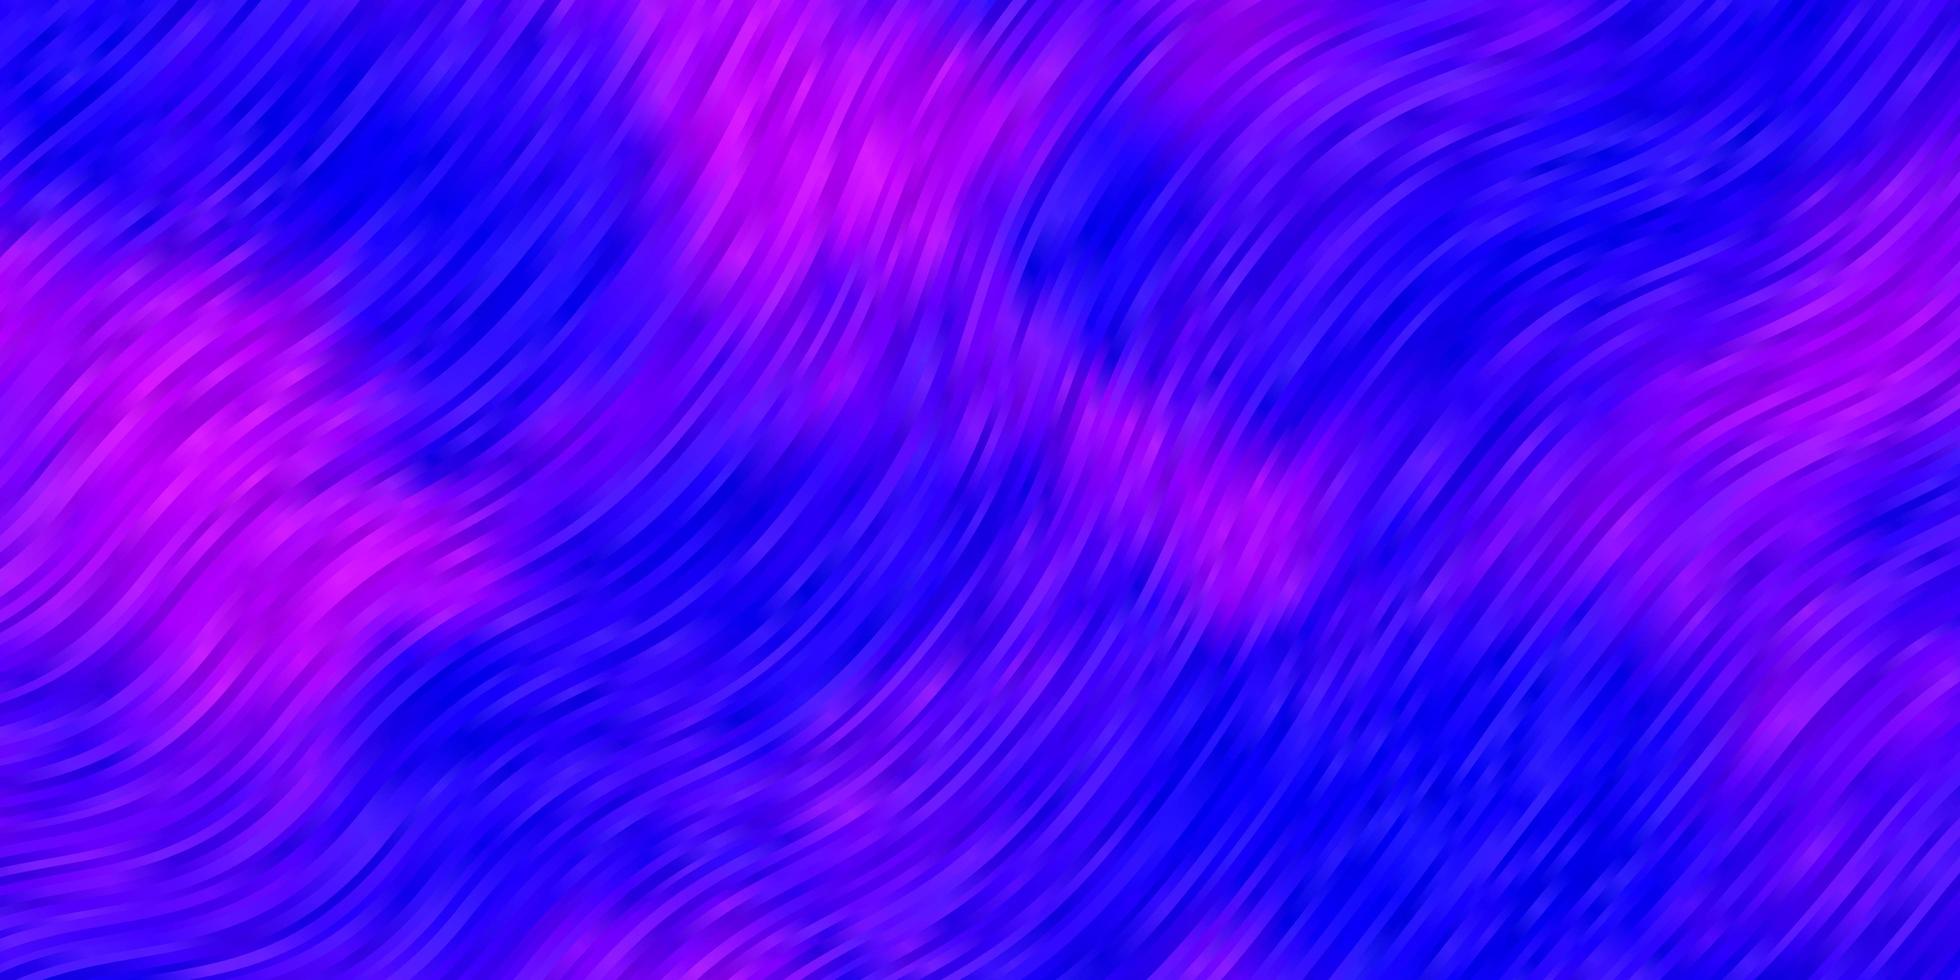 ljuslila vektorbakgrund med böjda linjer. vektor